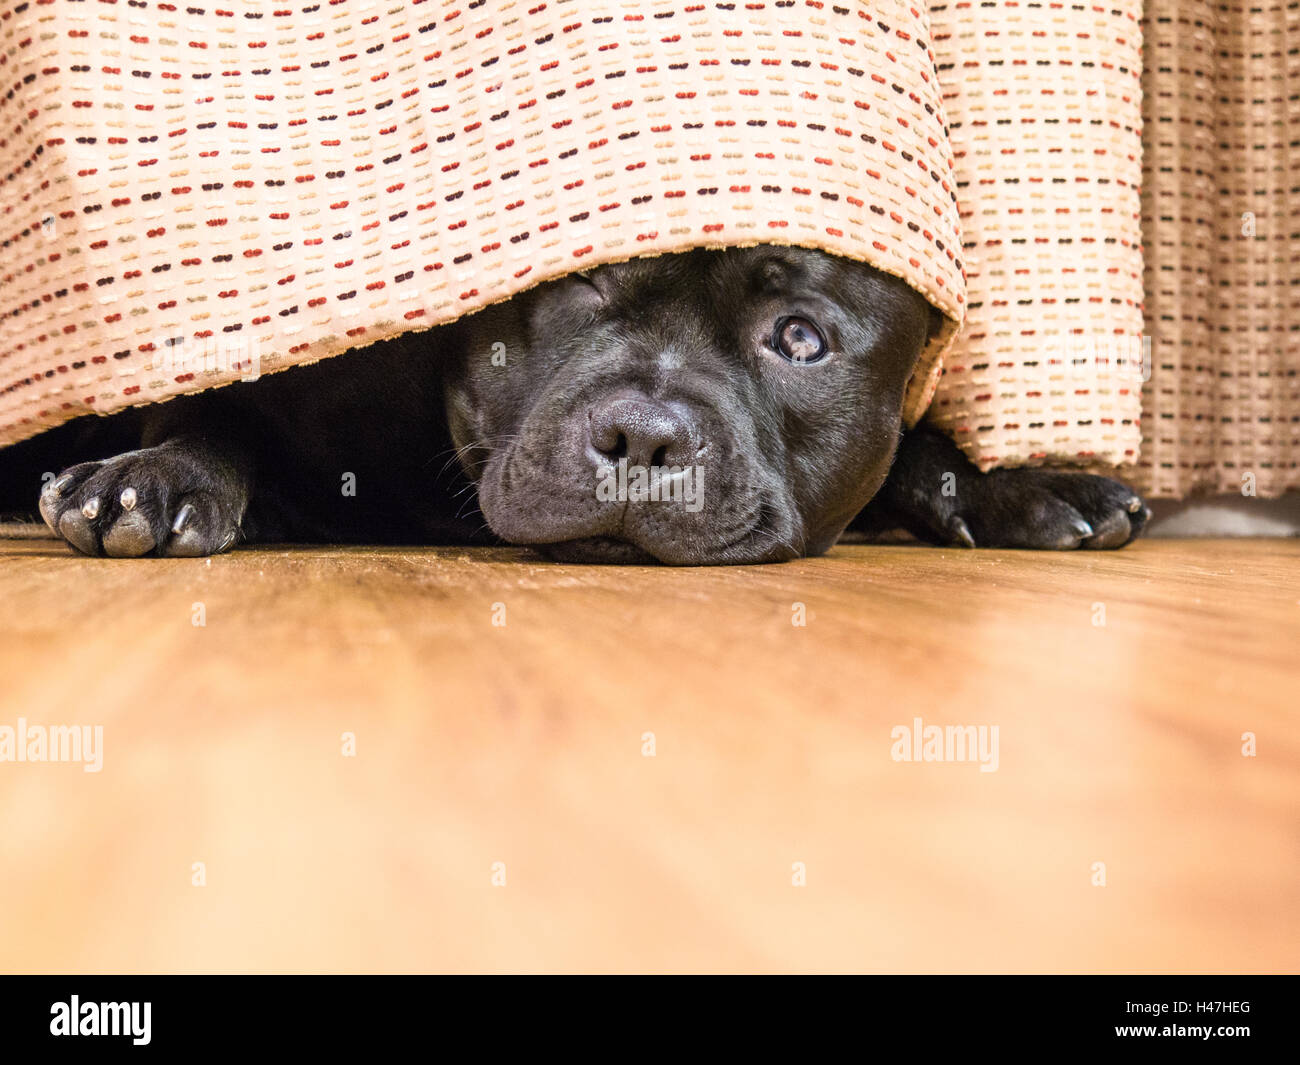 Cute Staffordshire Bull Terrier chien couché sur un plancher de bois se cachant sous un rideau, le drapé, un oeil ouvert peut être vu, Banque D'Images